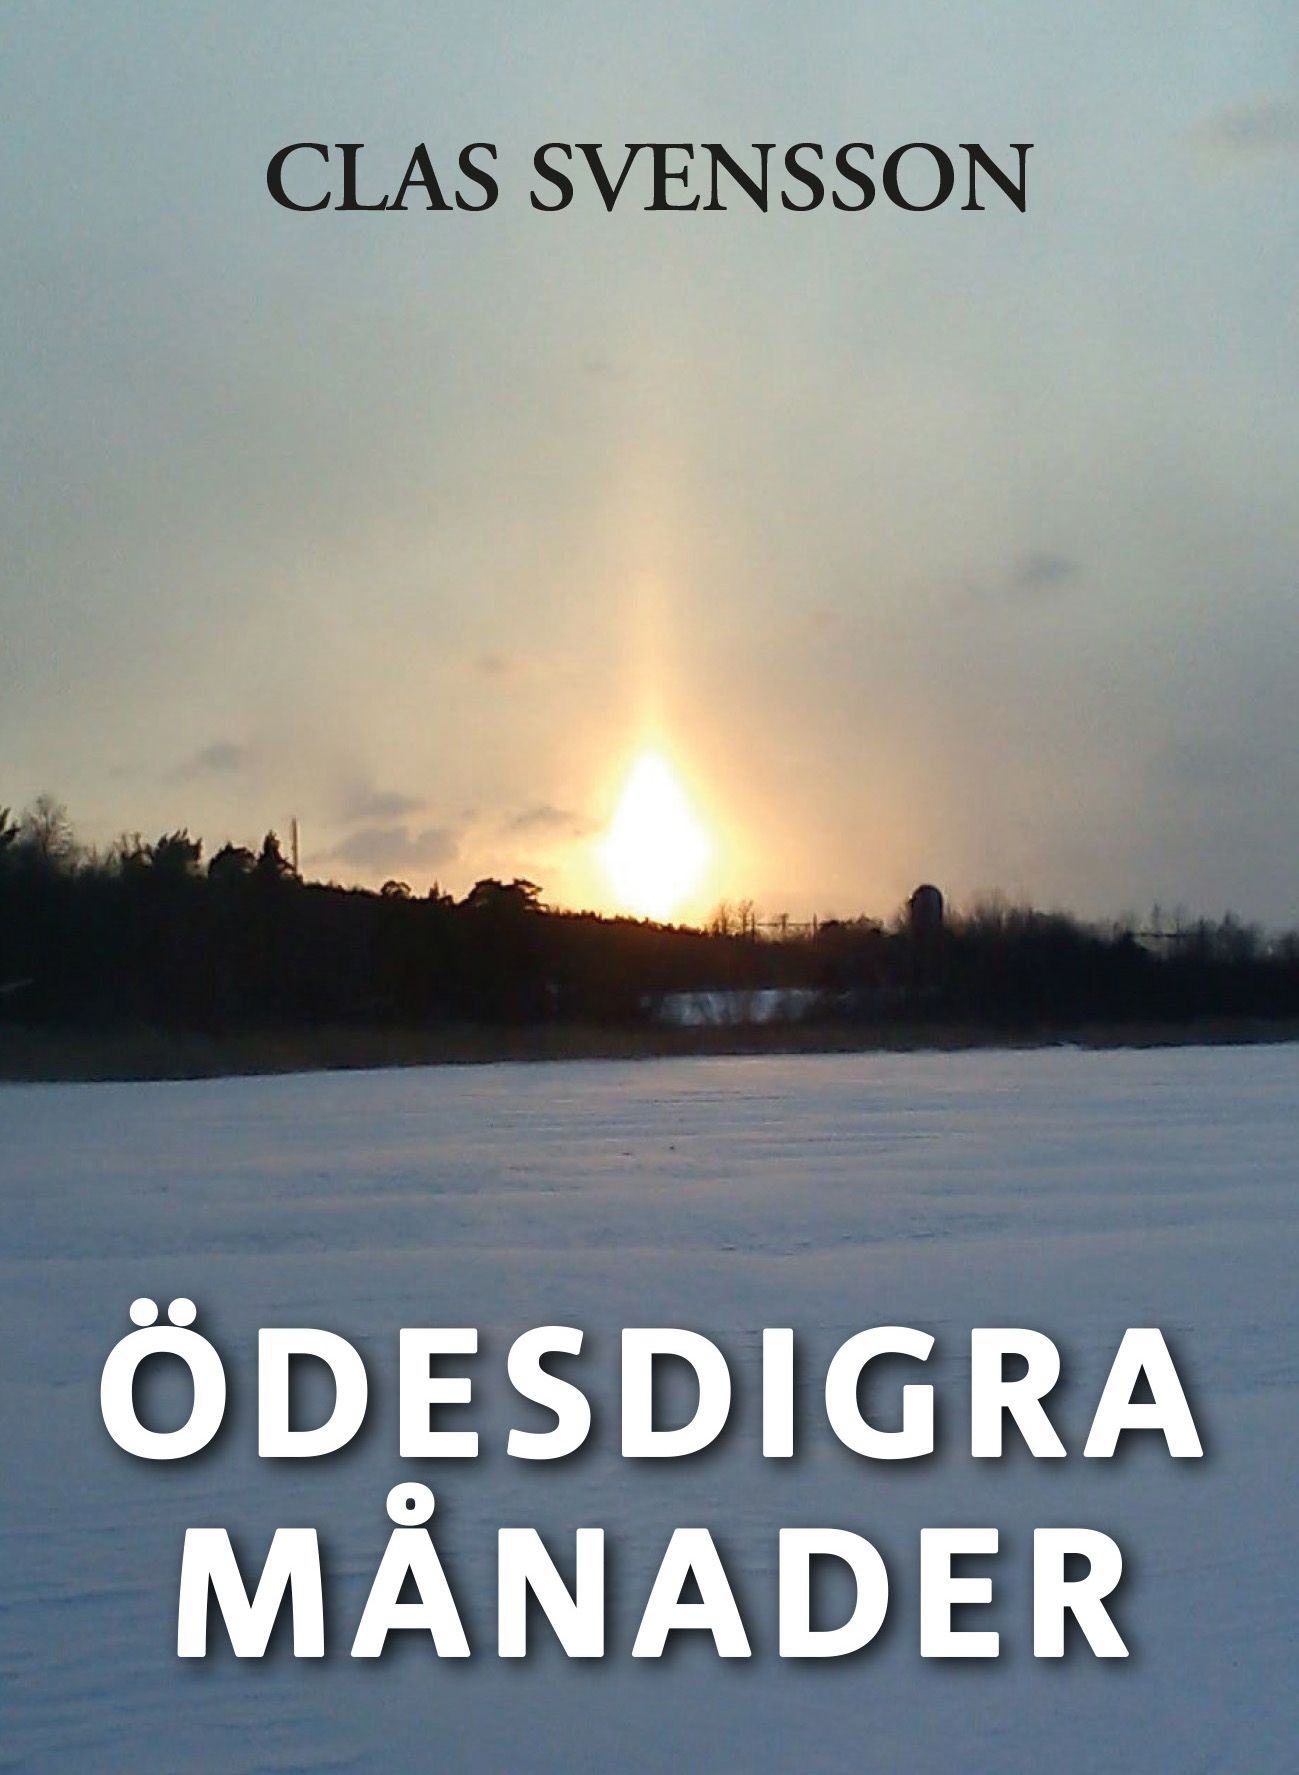 Ödesdigra månader, e-bog af Clas Svensson